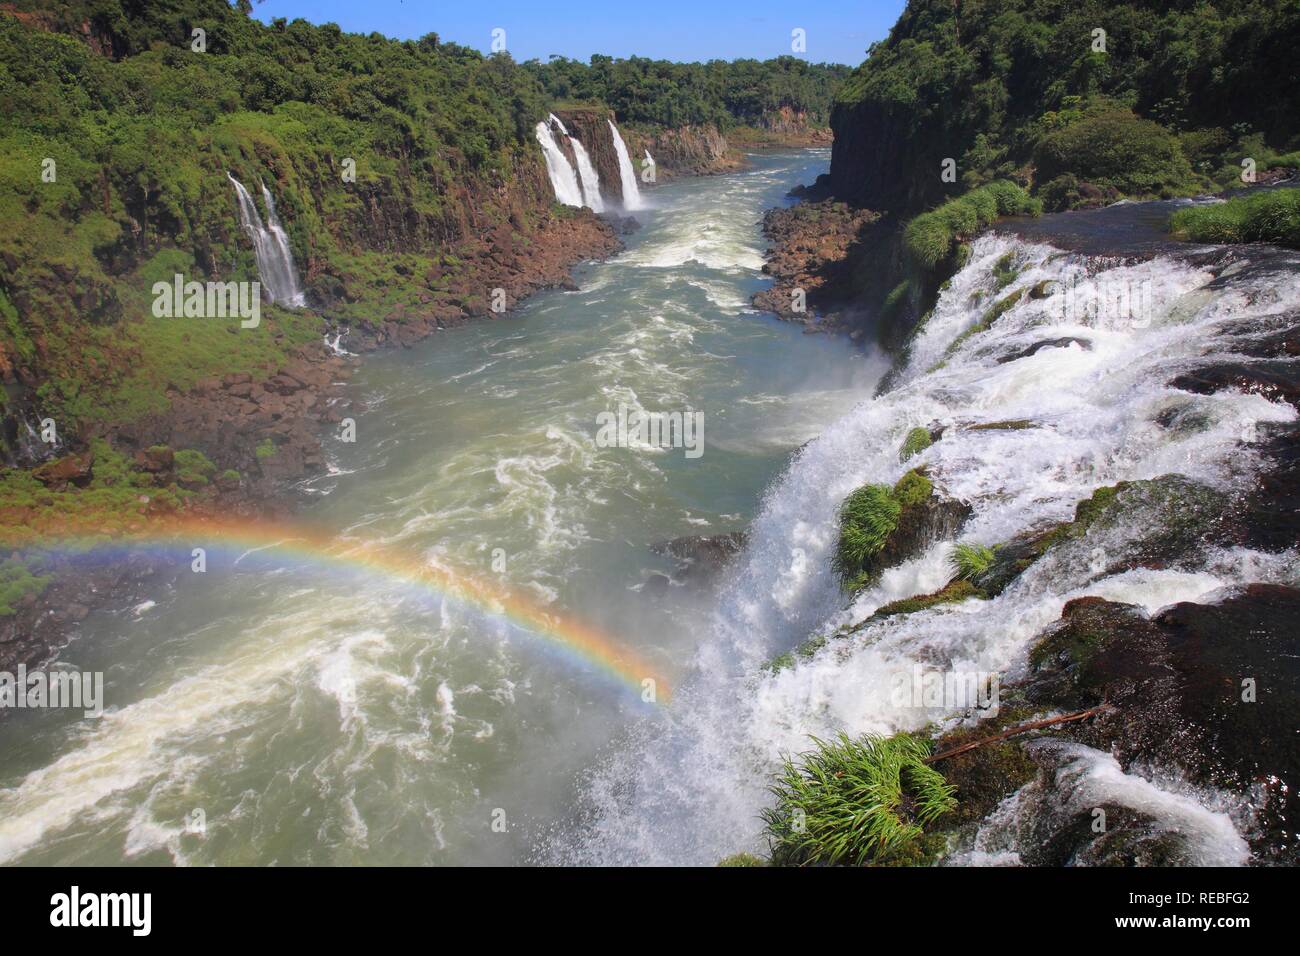 Rio Iguaçu river traversant la forêt tropicale brésilienne, Parana, Brésil, Amérique du Sud Banque D'Images